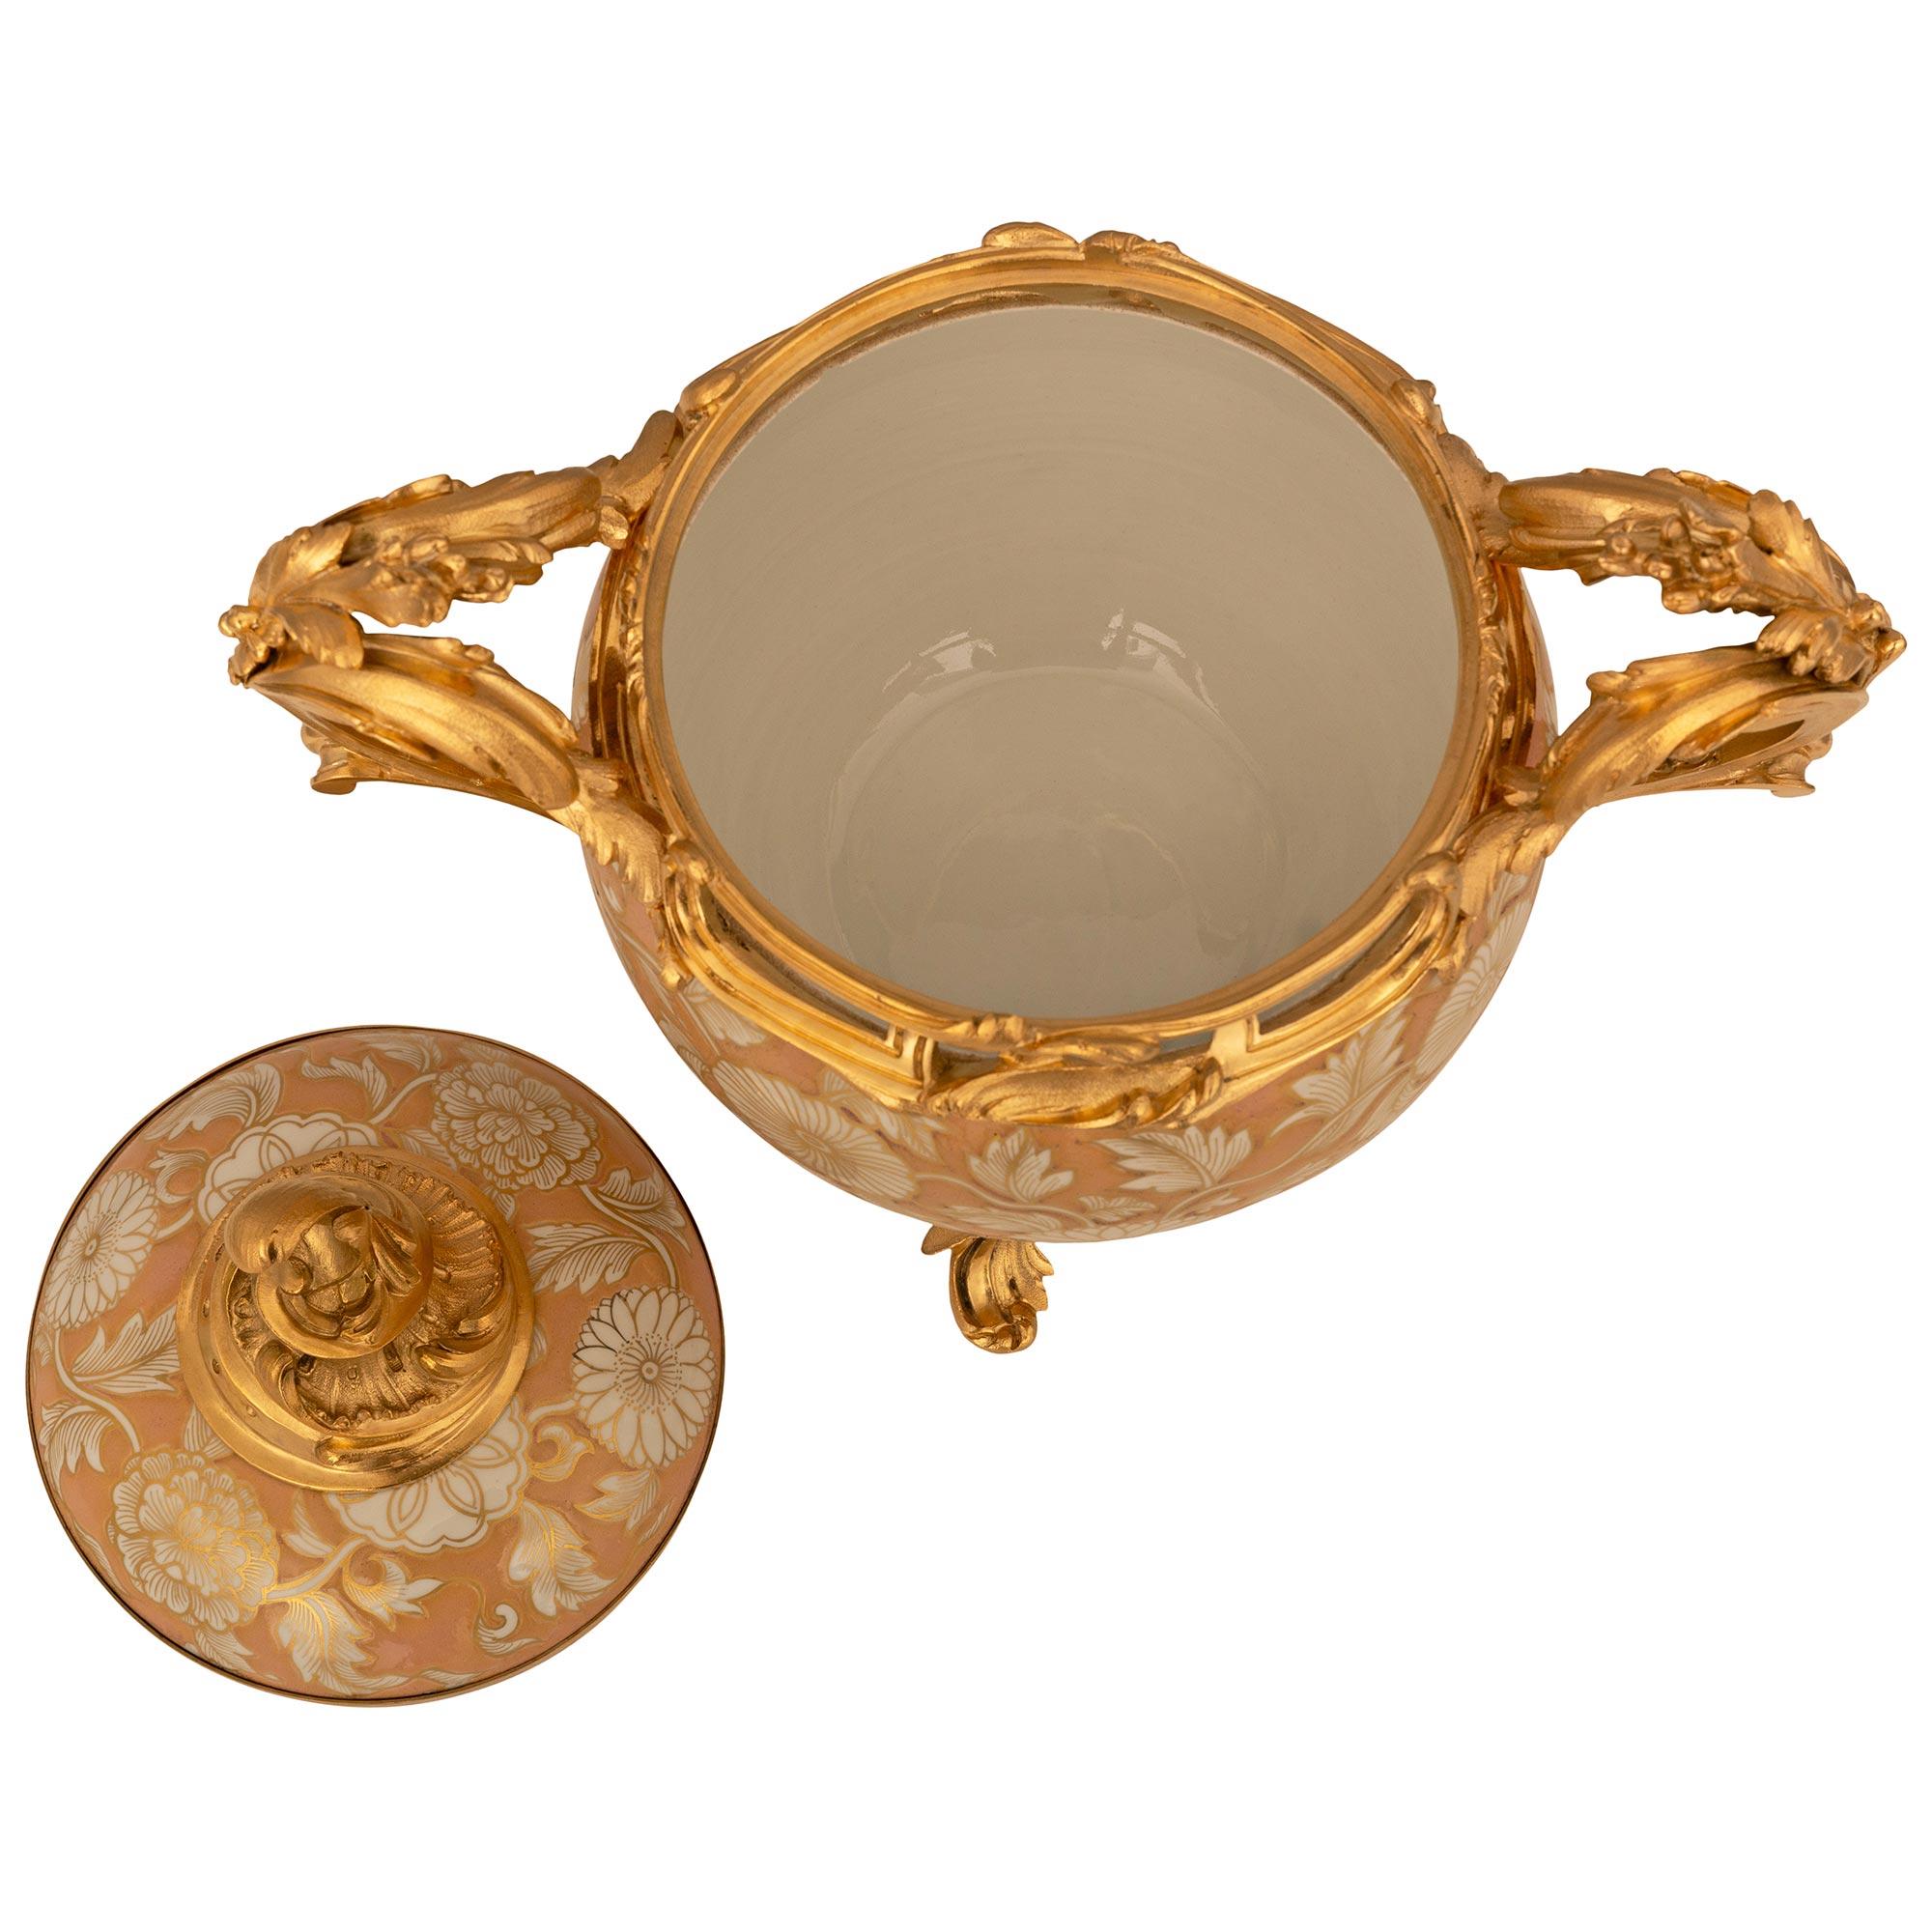 Eine schön detaillierte Französisch 19. Jahrhundert Louis XV st. chinesischen Export Porzellan und Ormolu Deckel Urne. Diese wunderbare Potpourri-Urne mit Deckel wird von vier blattgeschmückten Ormolu-Füßen getragen, die mit den wunderschönen, reich